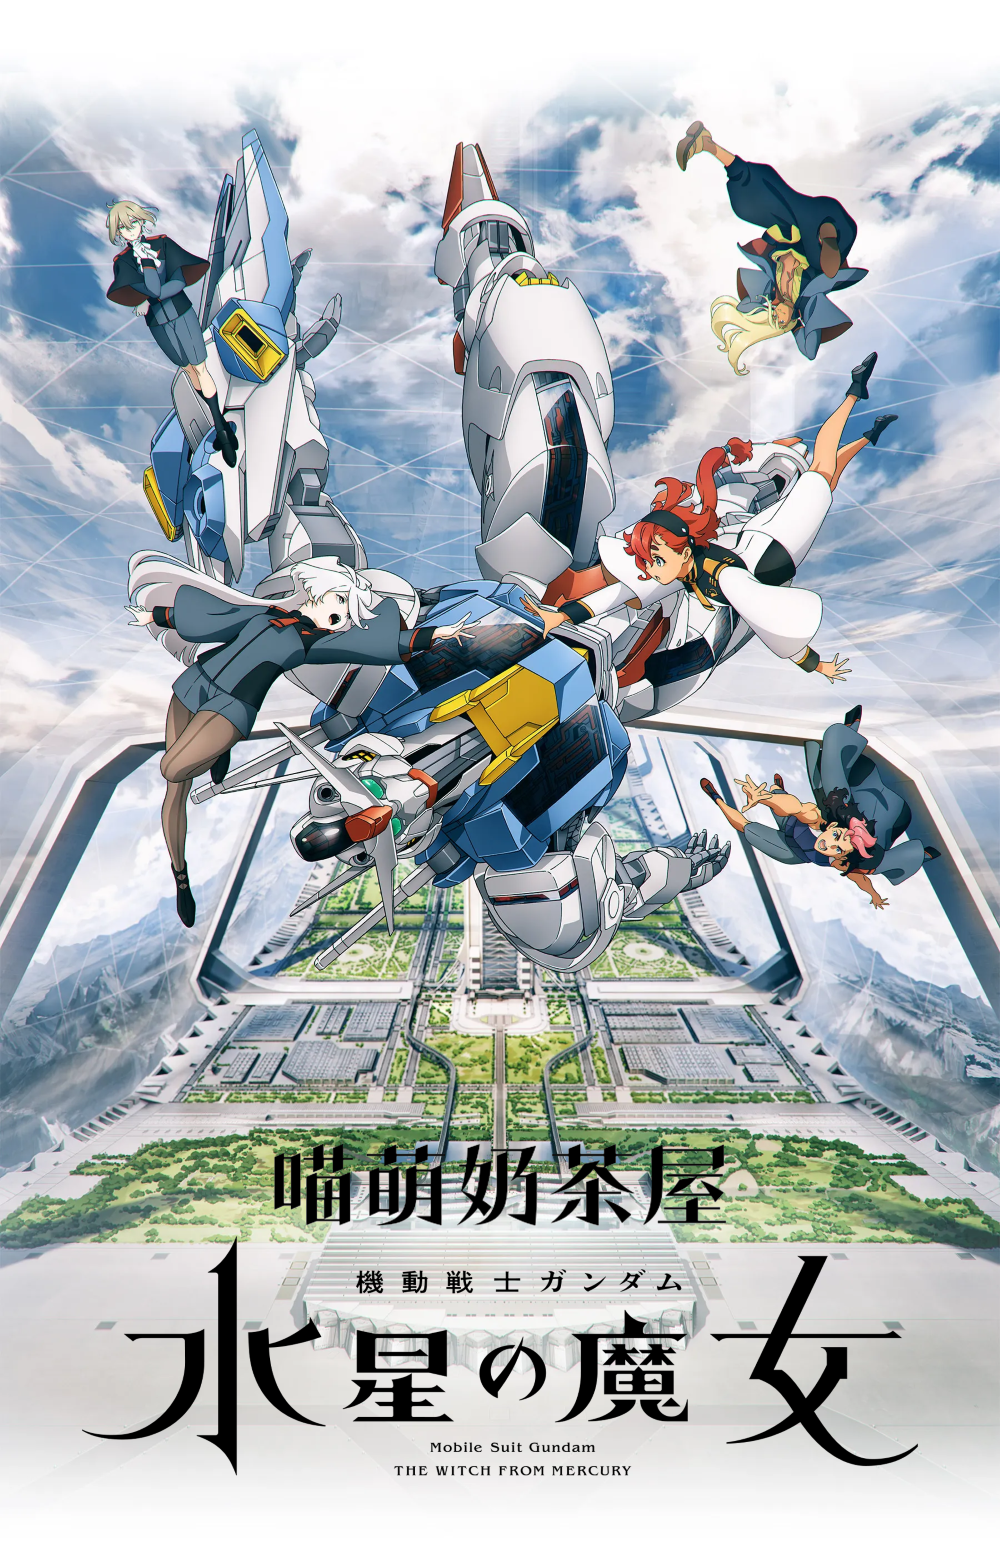 【喵萌奶茶屋】10月新番[机动战士高达 水星的魔女/Mobile Suit Gundam THE WITCH FROM MERCURY][02][720p][简日双语][招募翻译]